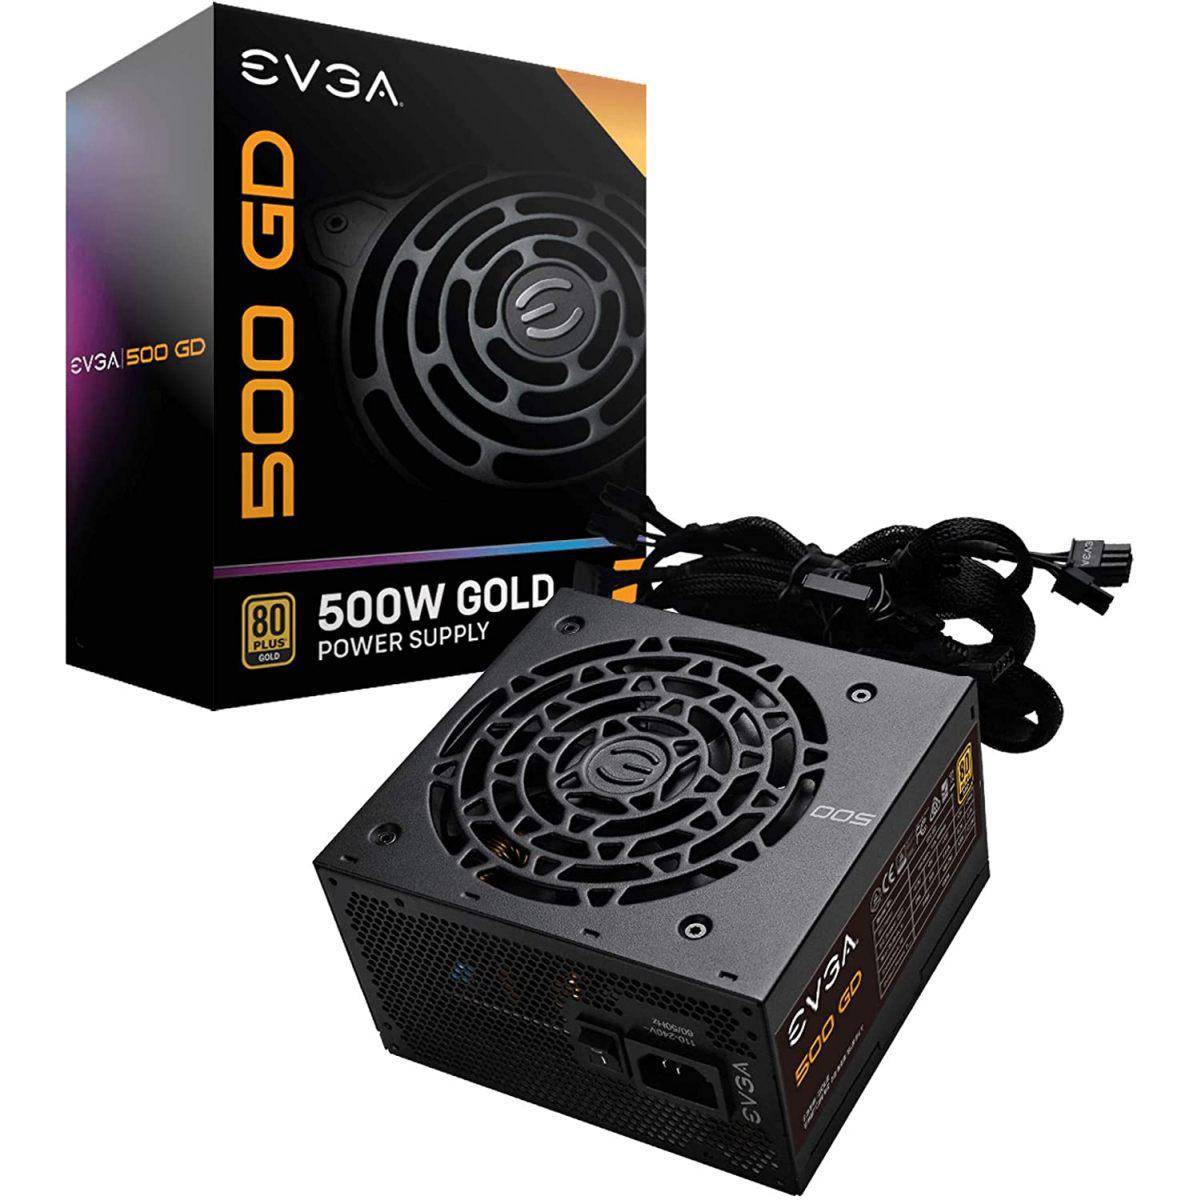 Evga - EVGA 500 GD - 80+ Gold - Alimentation non modulaire